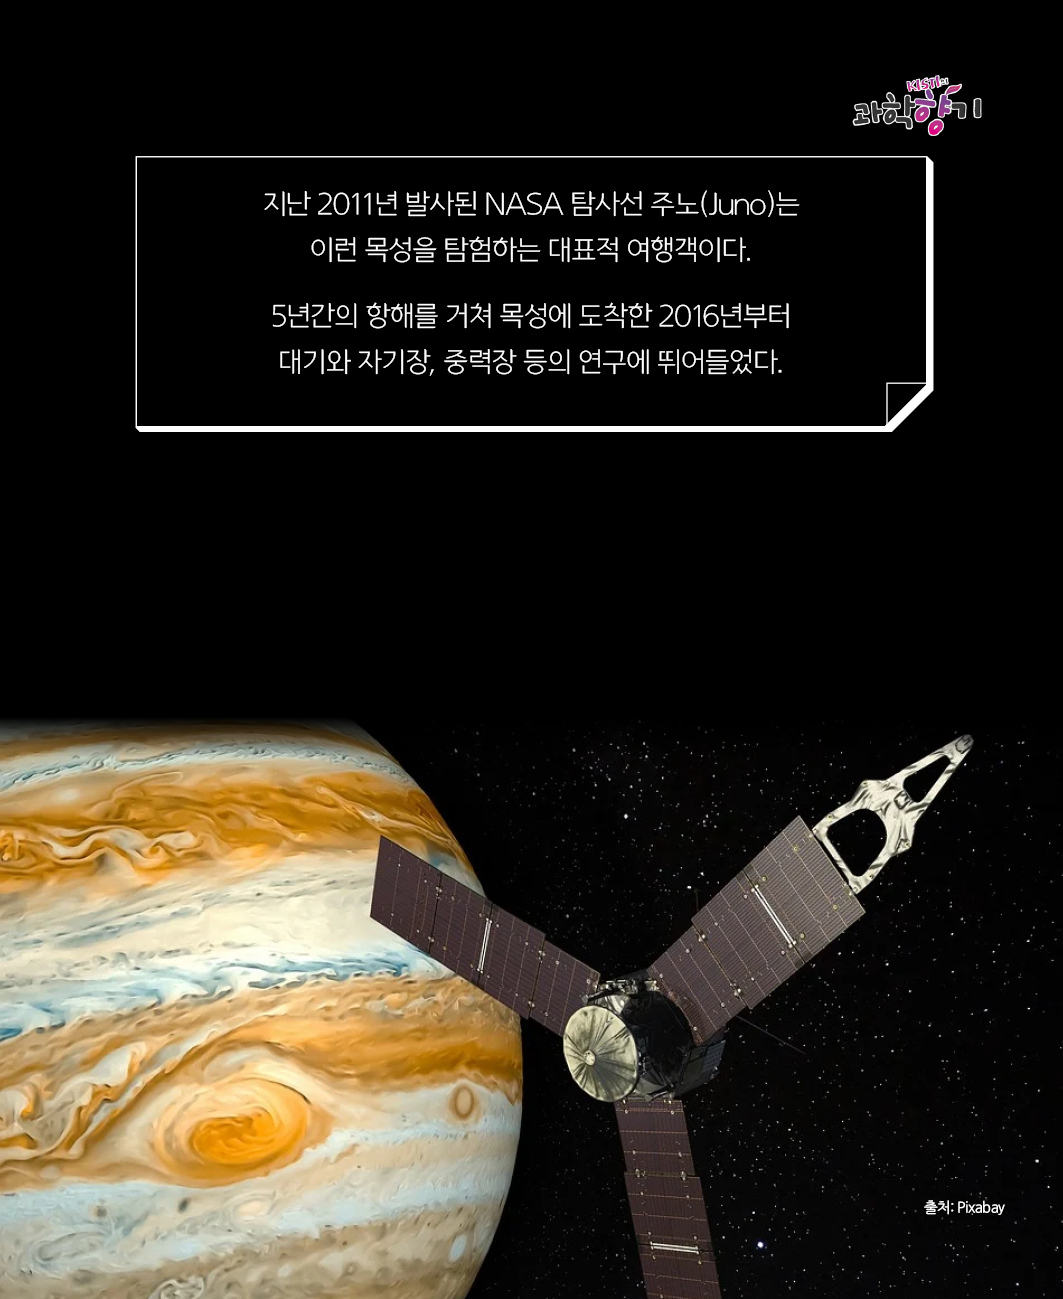 지난 2011년 발사된 NASA 탐사선 주노(Juno)는 이런 목성을 탐험하는 대표적 여행객이다.   5년간의 항해를 거쳐 목성에 도착한 2016년부터 대기와 자기장, 중력장 등의 연구에 뛰어들었다.